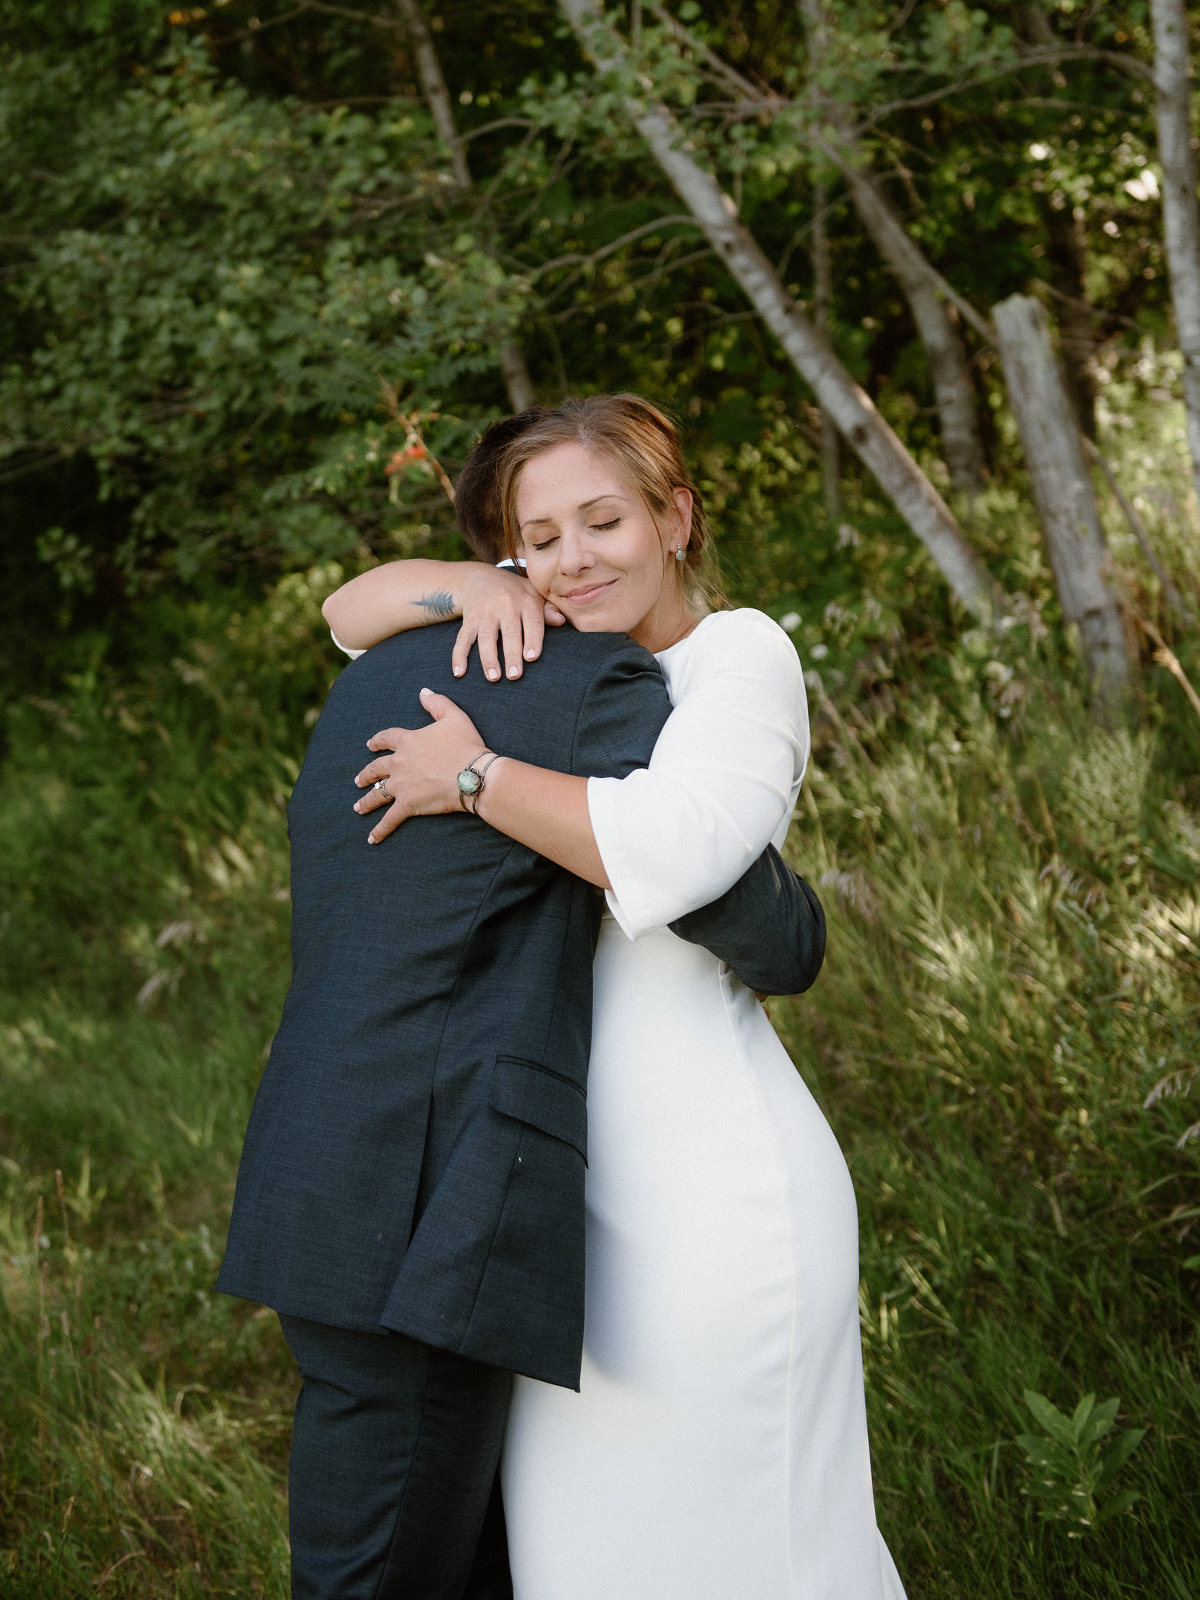 Bride and groom intimate hug